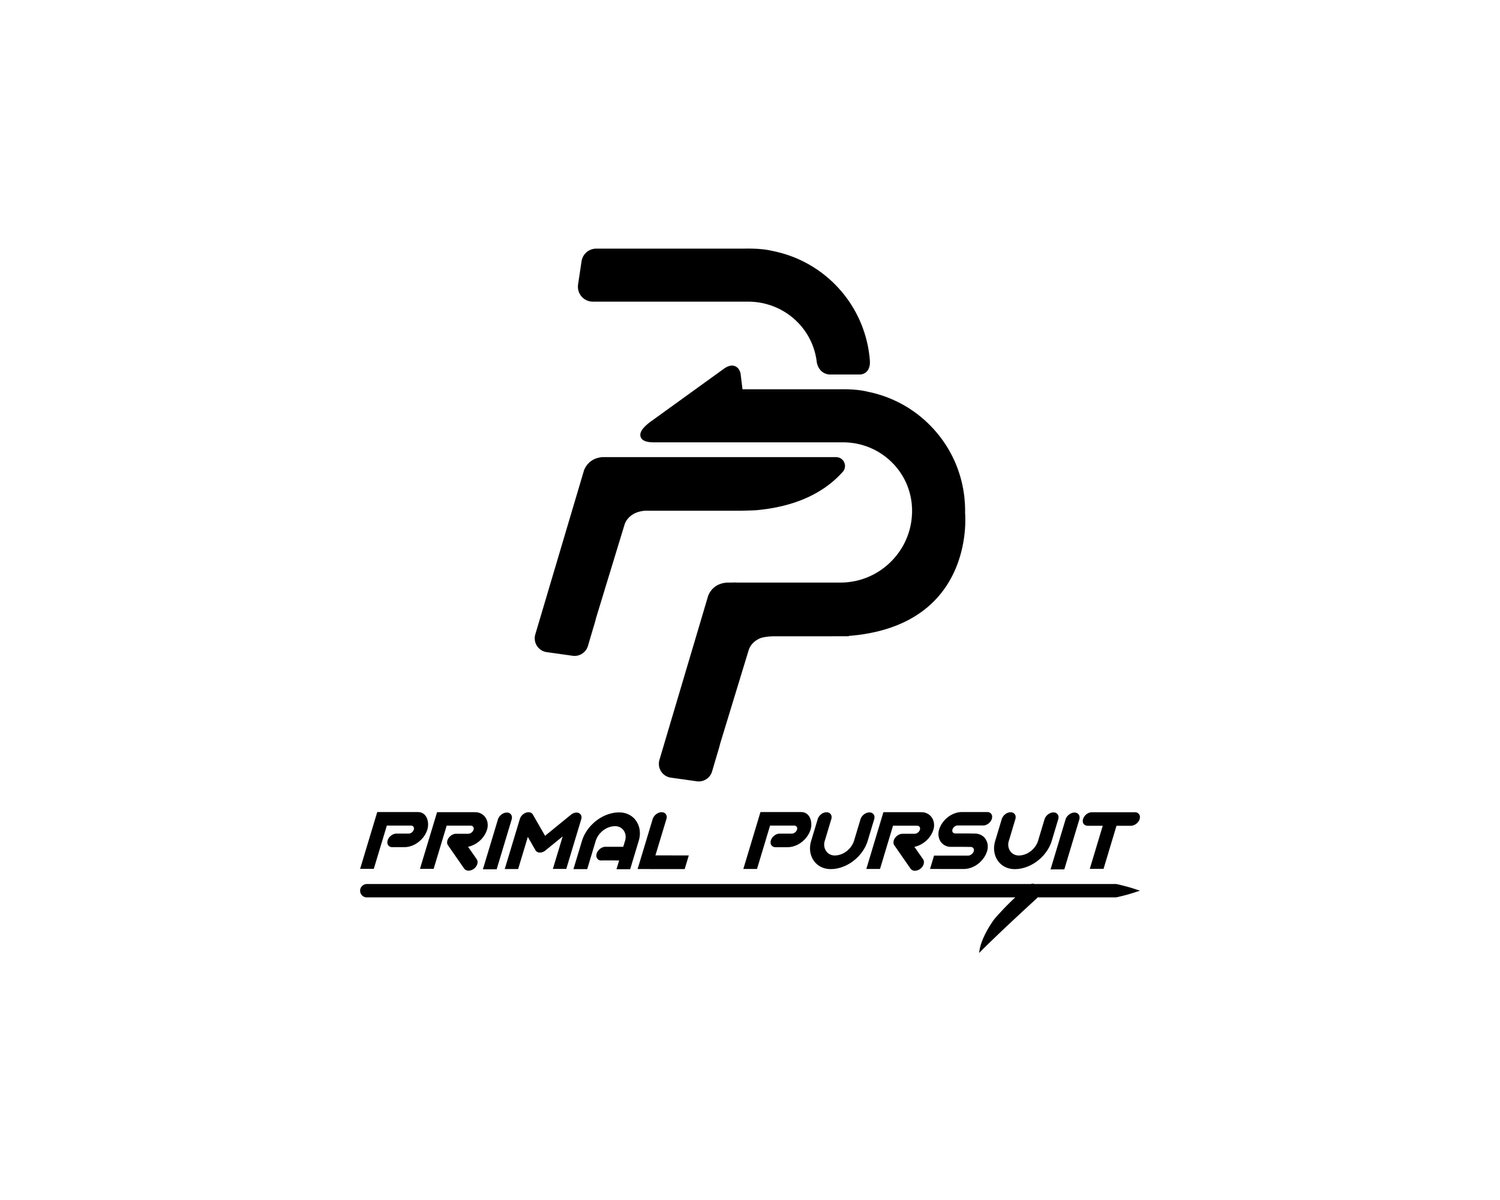 Primal Pursuit - By Ollie Craig